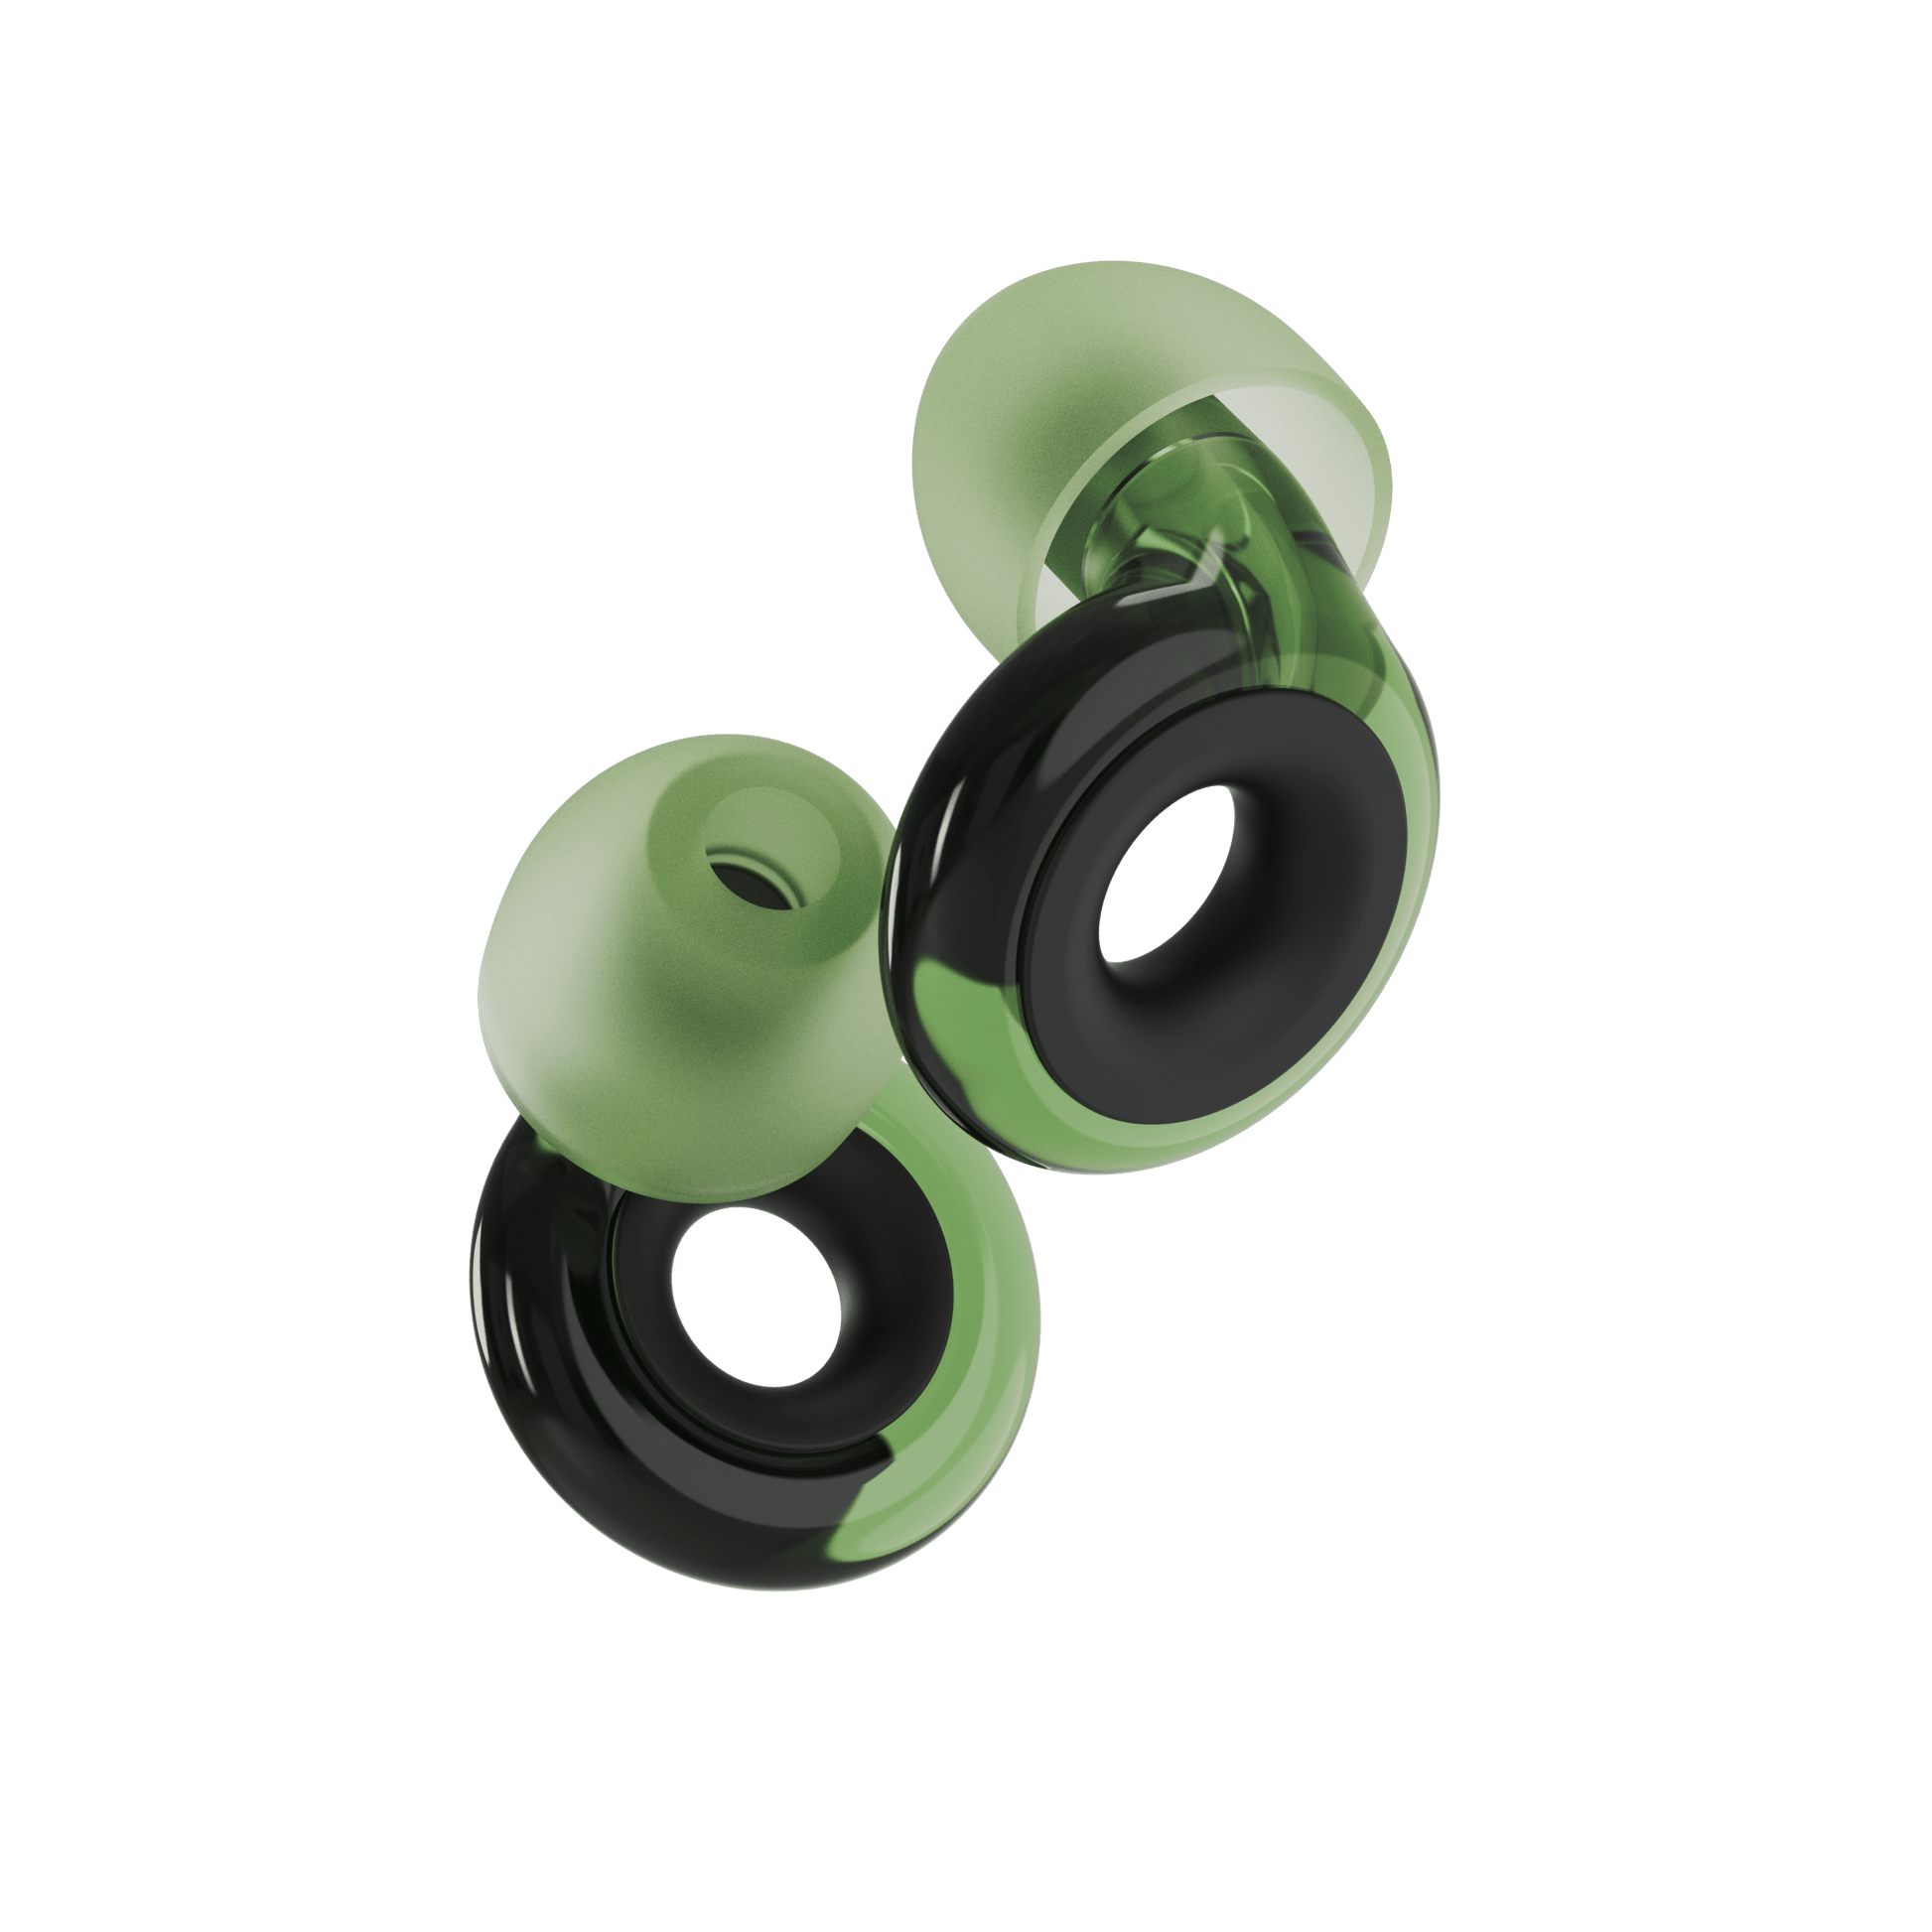  Loop Earplugs Ultimate Plus Bundle – Loop Quiet + Experience  Plus + Engage Plus + Mute + Carry Case, Ear Plugs for Sleep, Focus,  Concerts, Socializing & More